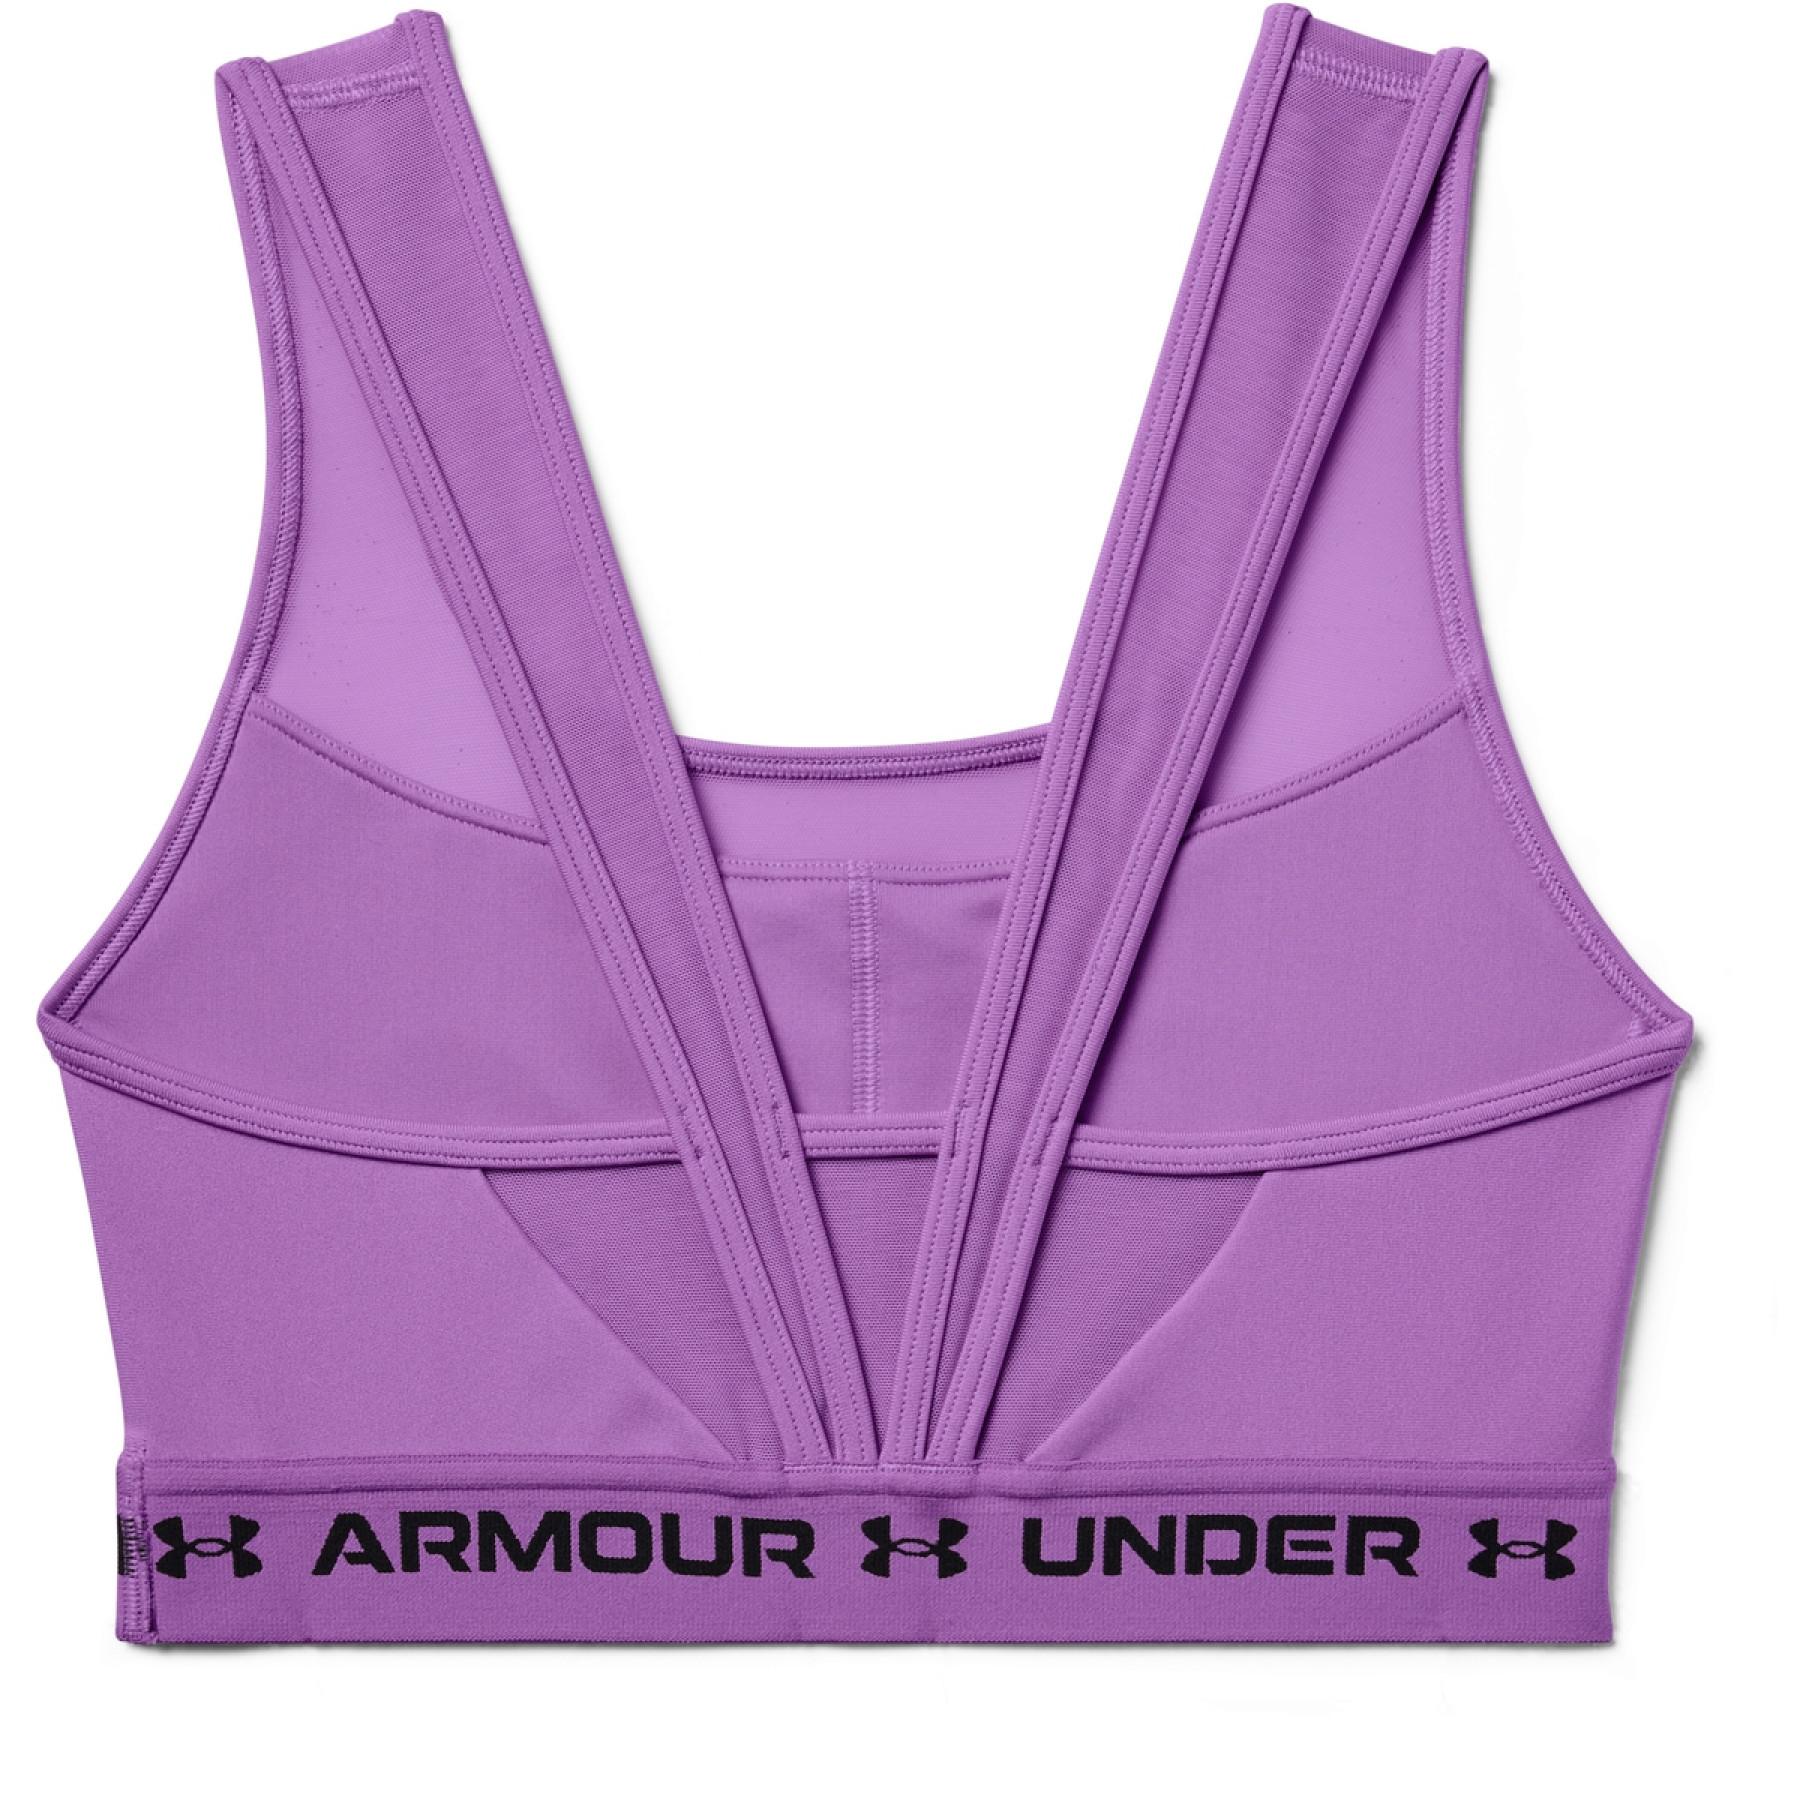 Women's bra Under Armour de sport mid crossback MF sports